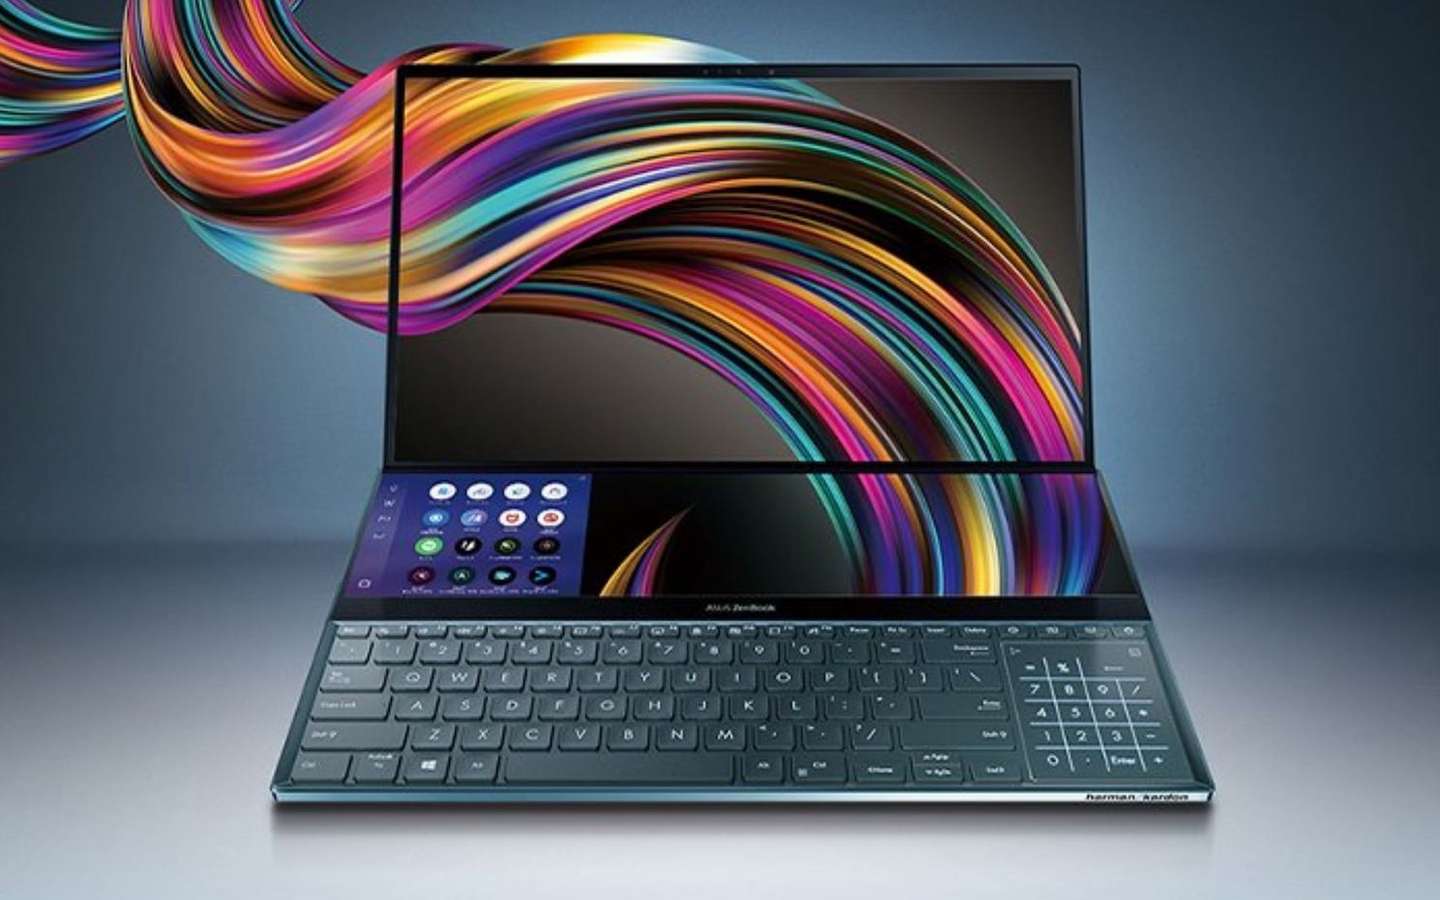 PC portable : promotion exceptionnelle sur l'Asus Zenbook OLED chez